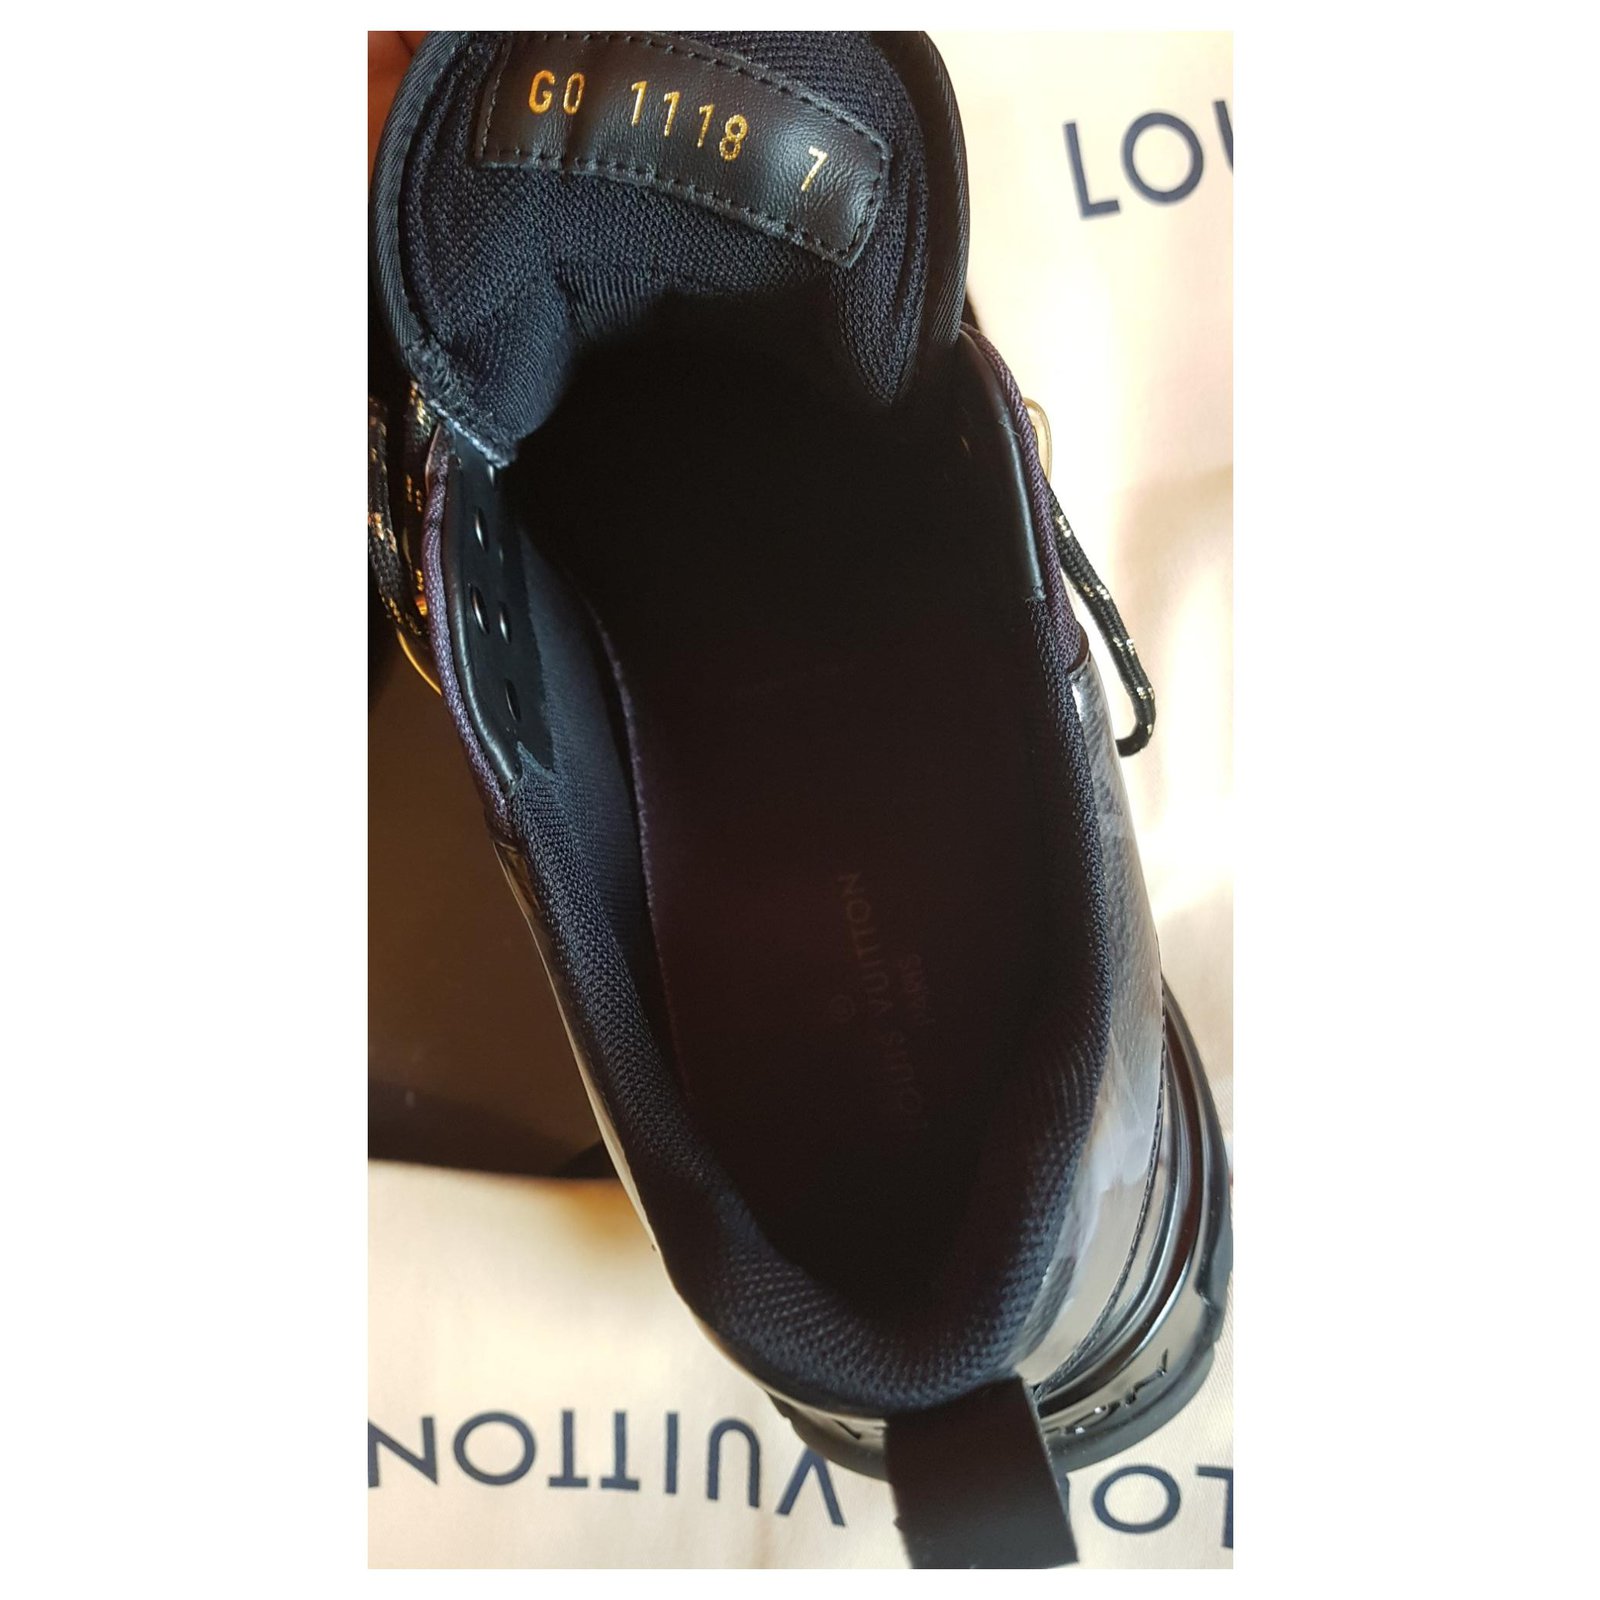 Louis Vuitton sneakers run away pulse Brown Black Golden Dark grey